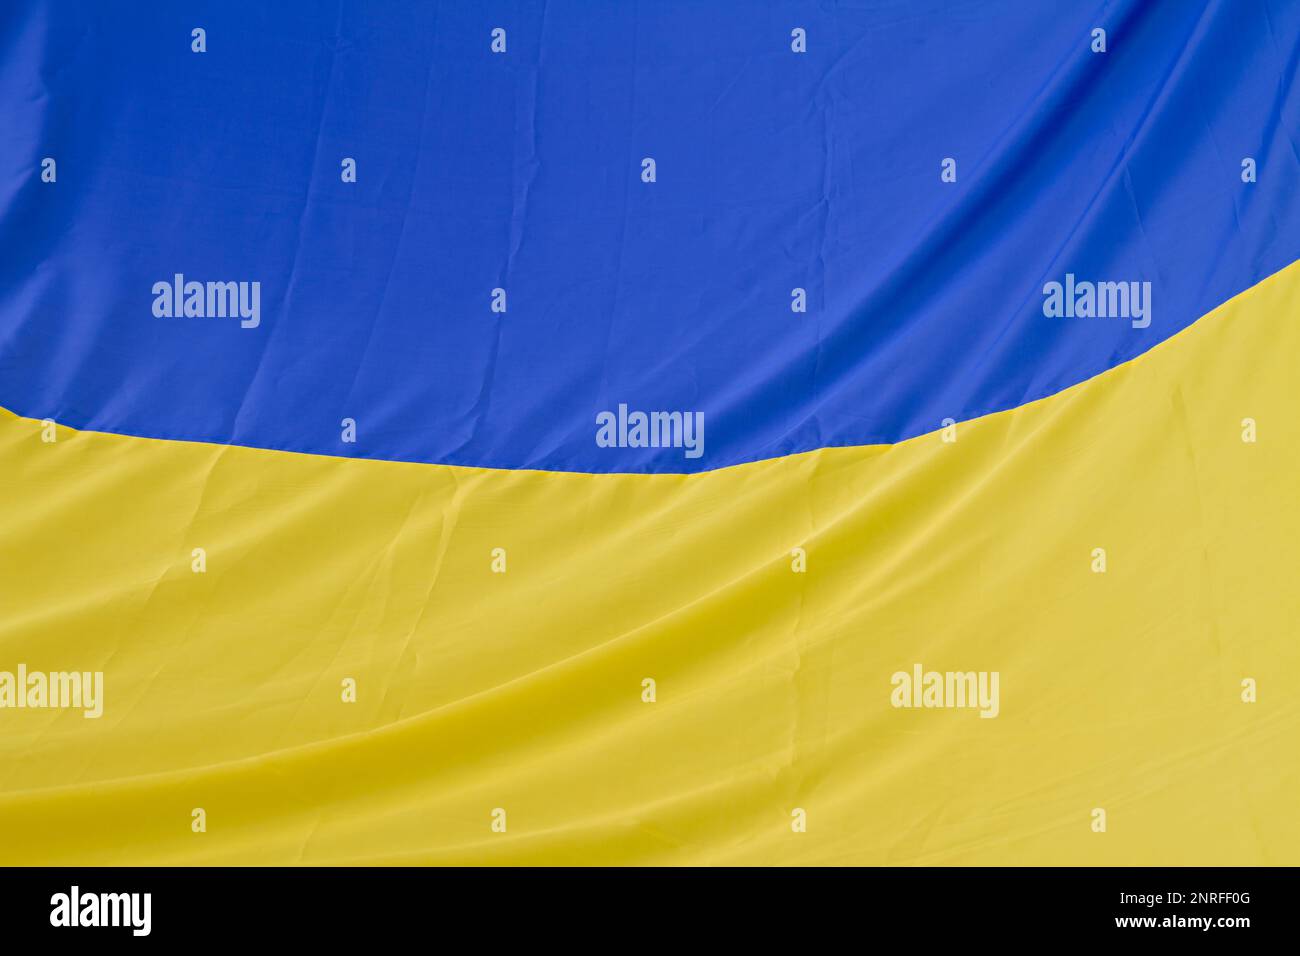 Bandiera nazionale dell'Ucraina. Firma dello stato di Ukranin blu e giallo. Foto Stock